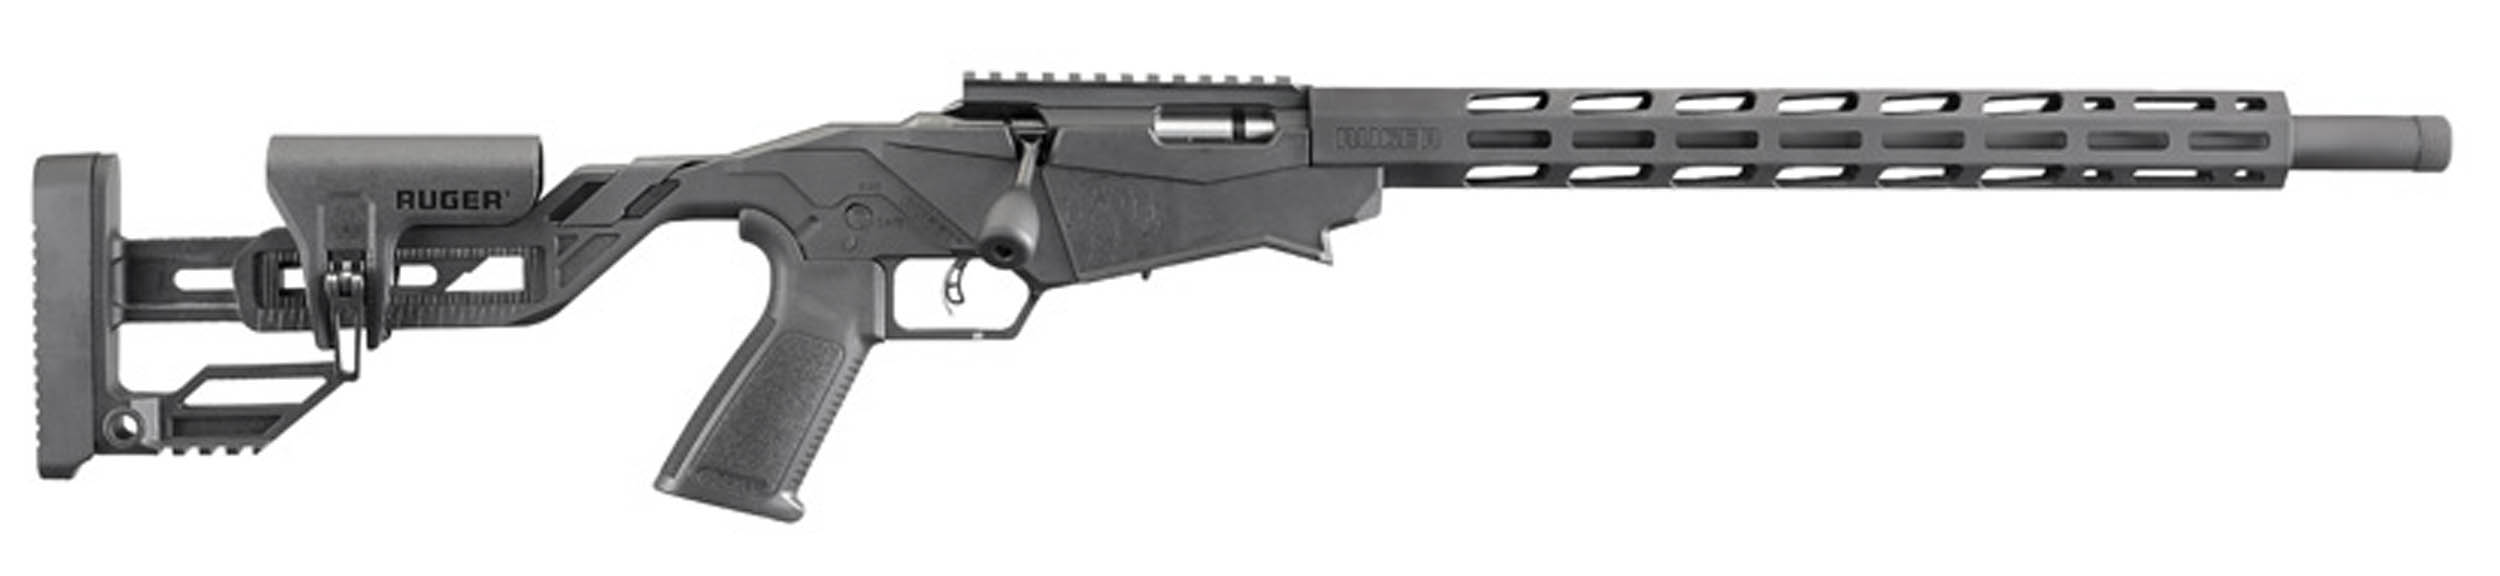 Carabine à verrou Ruger Precision Rimfire calibre .22 LR 18